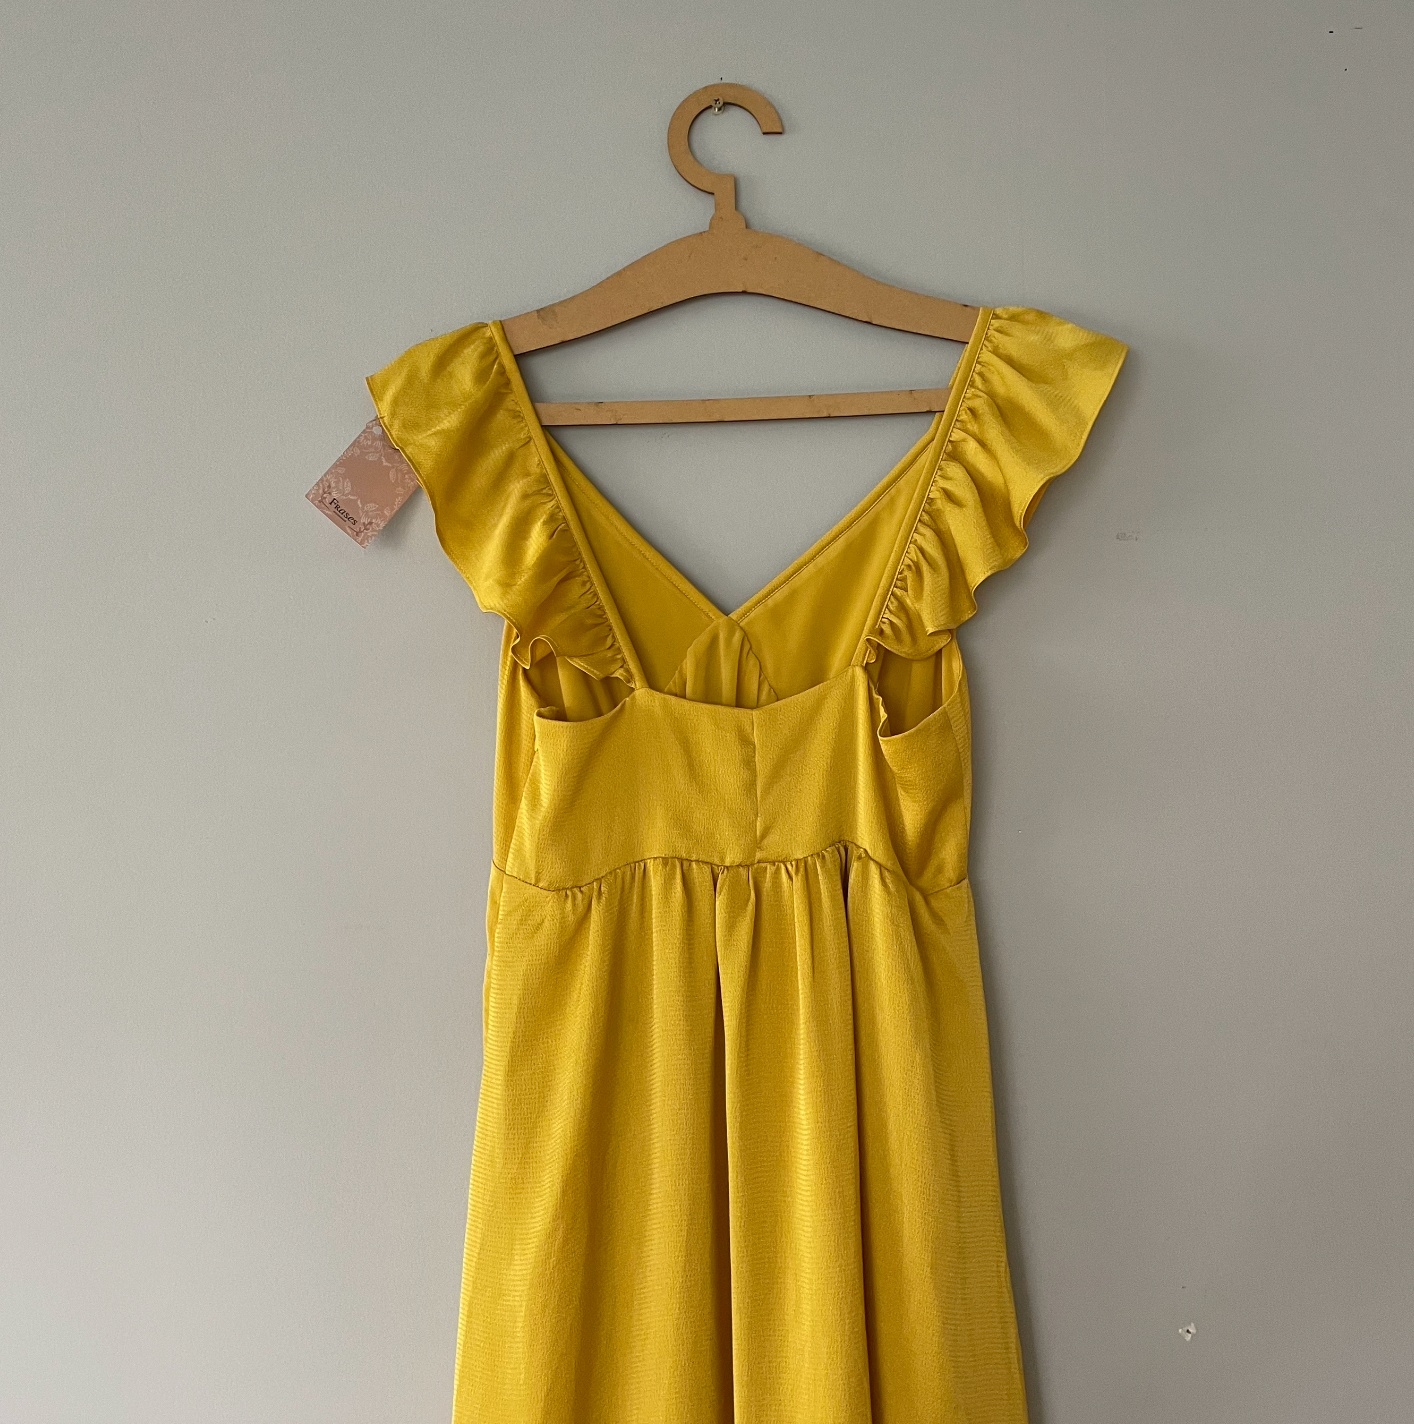 Vestido Amarillo